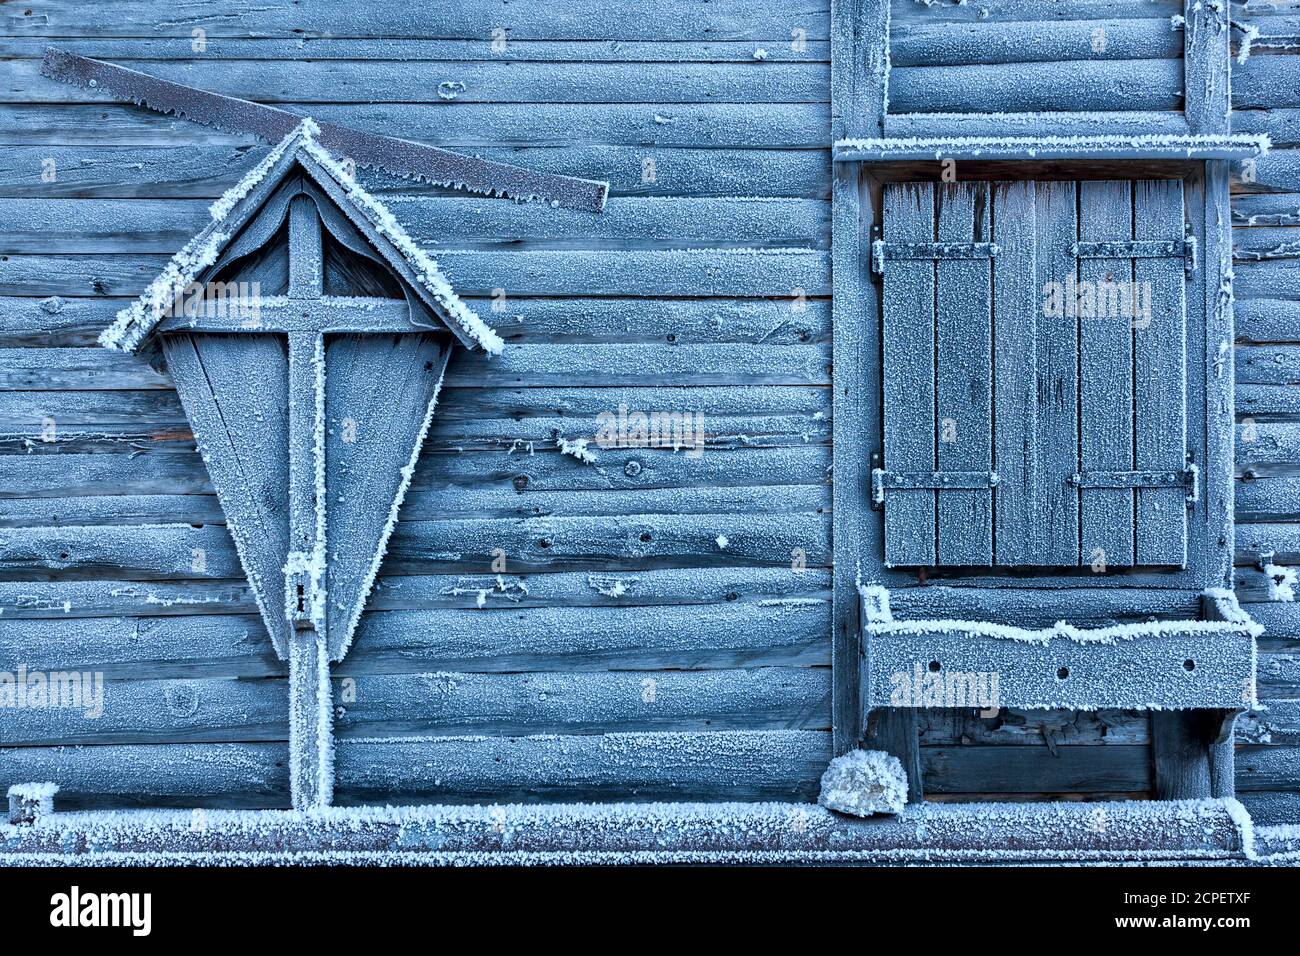 Detalle de la pared exterior de un chalet de madera cubierto con hielo, ansiei valle, Auronzo di Cadore, Belluno, dolomitas Foto de stock